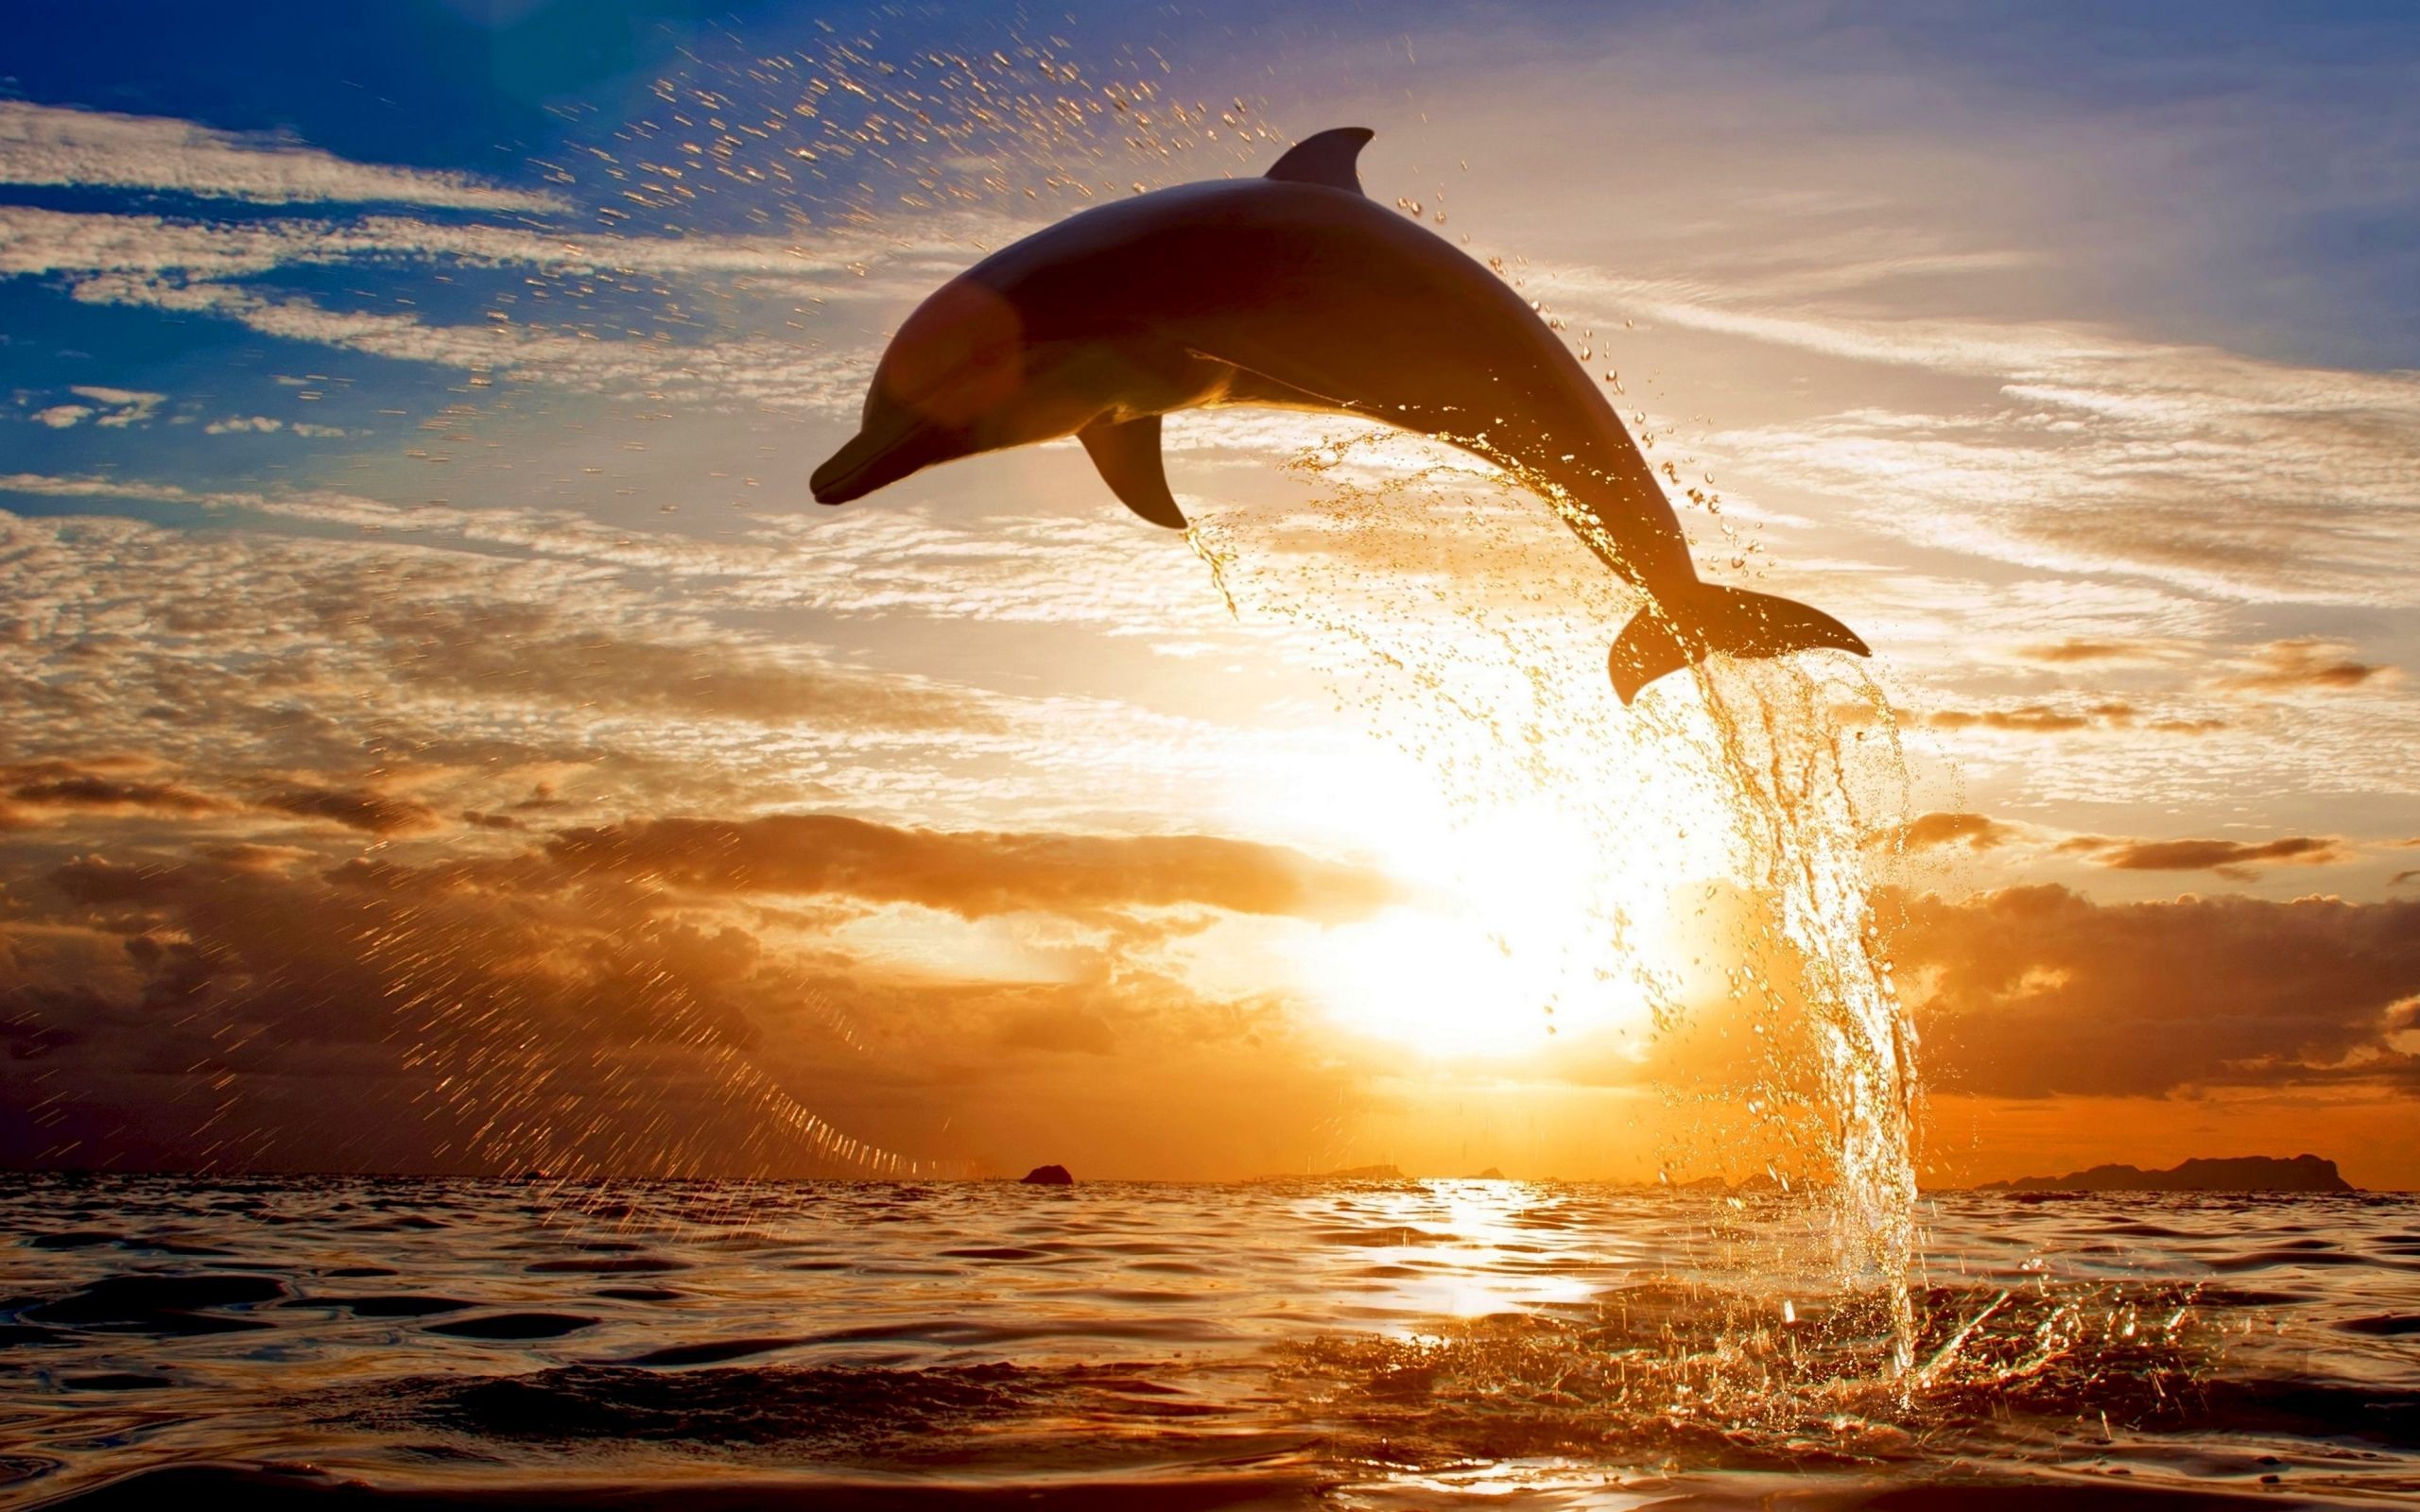  Delfine Hintergrundbild 2560x1600. Laden Sie Das Delfine Hintergrundbild Für Ihr Handy In Hochwertigen, Hintergrundbildern Delfine Kostenlos Herunter